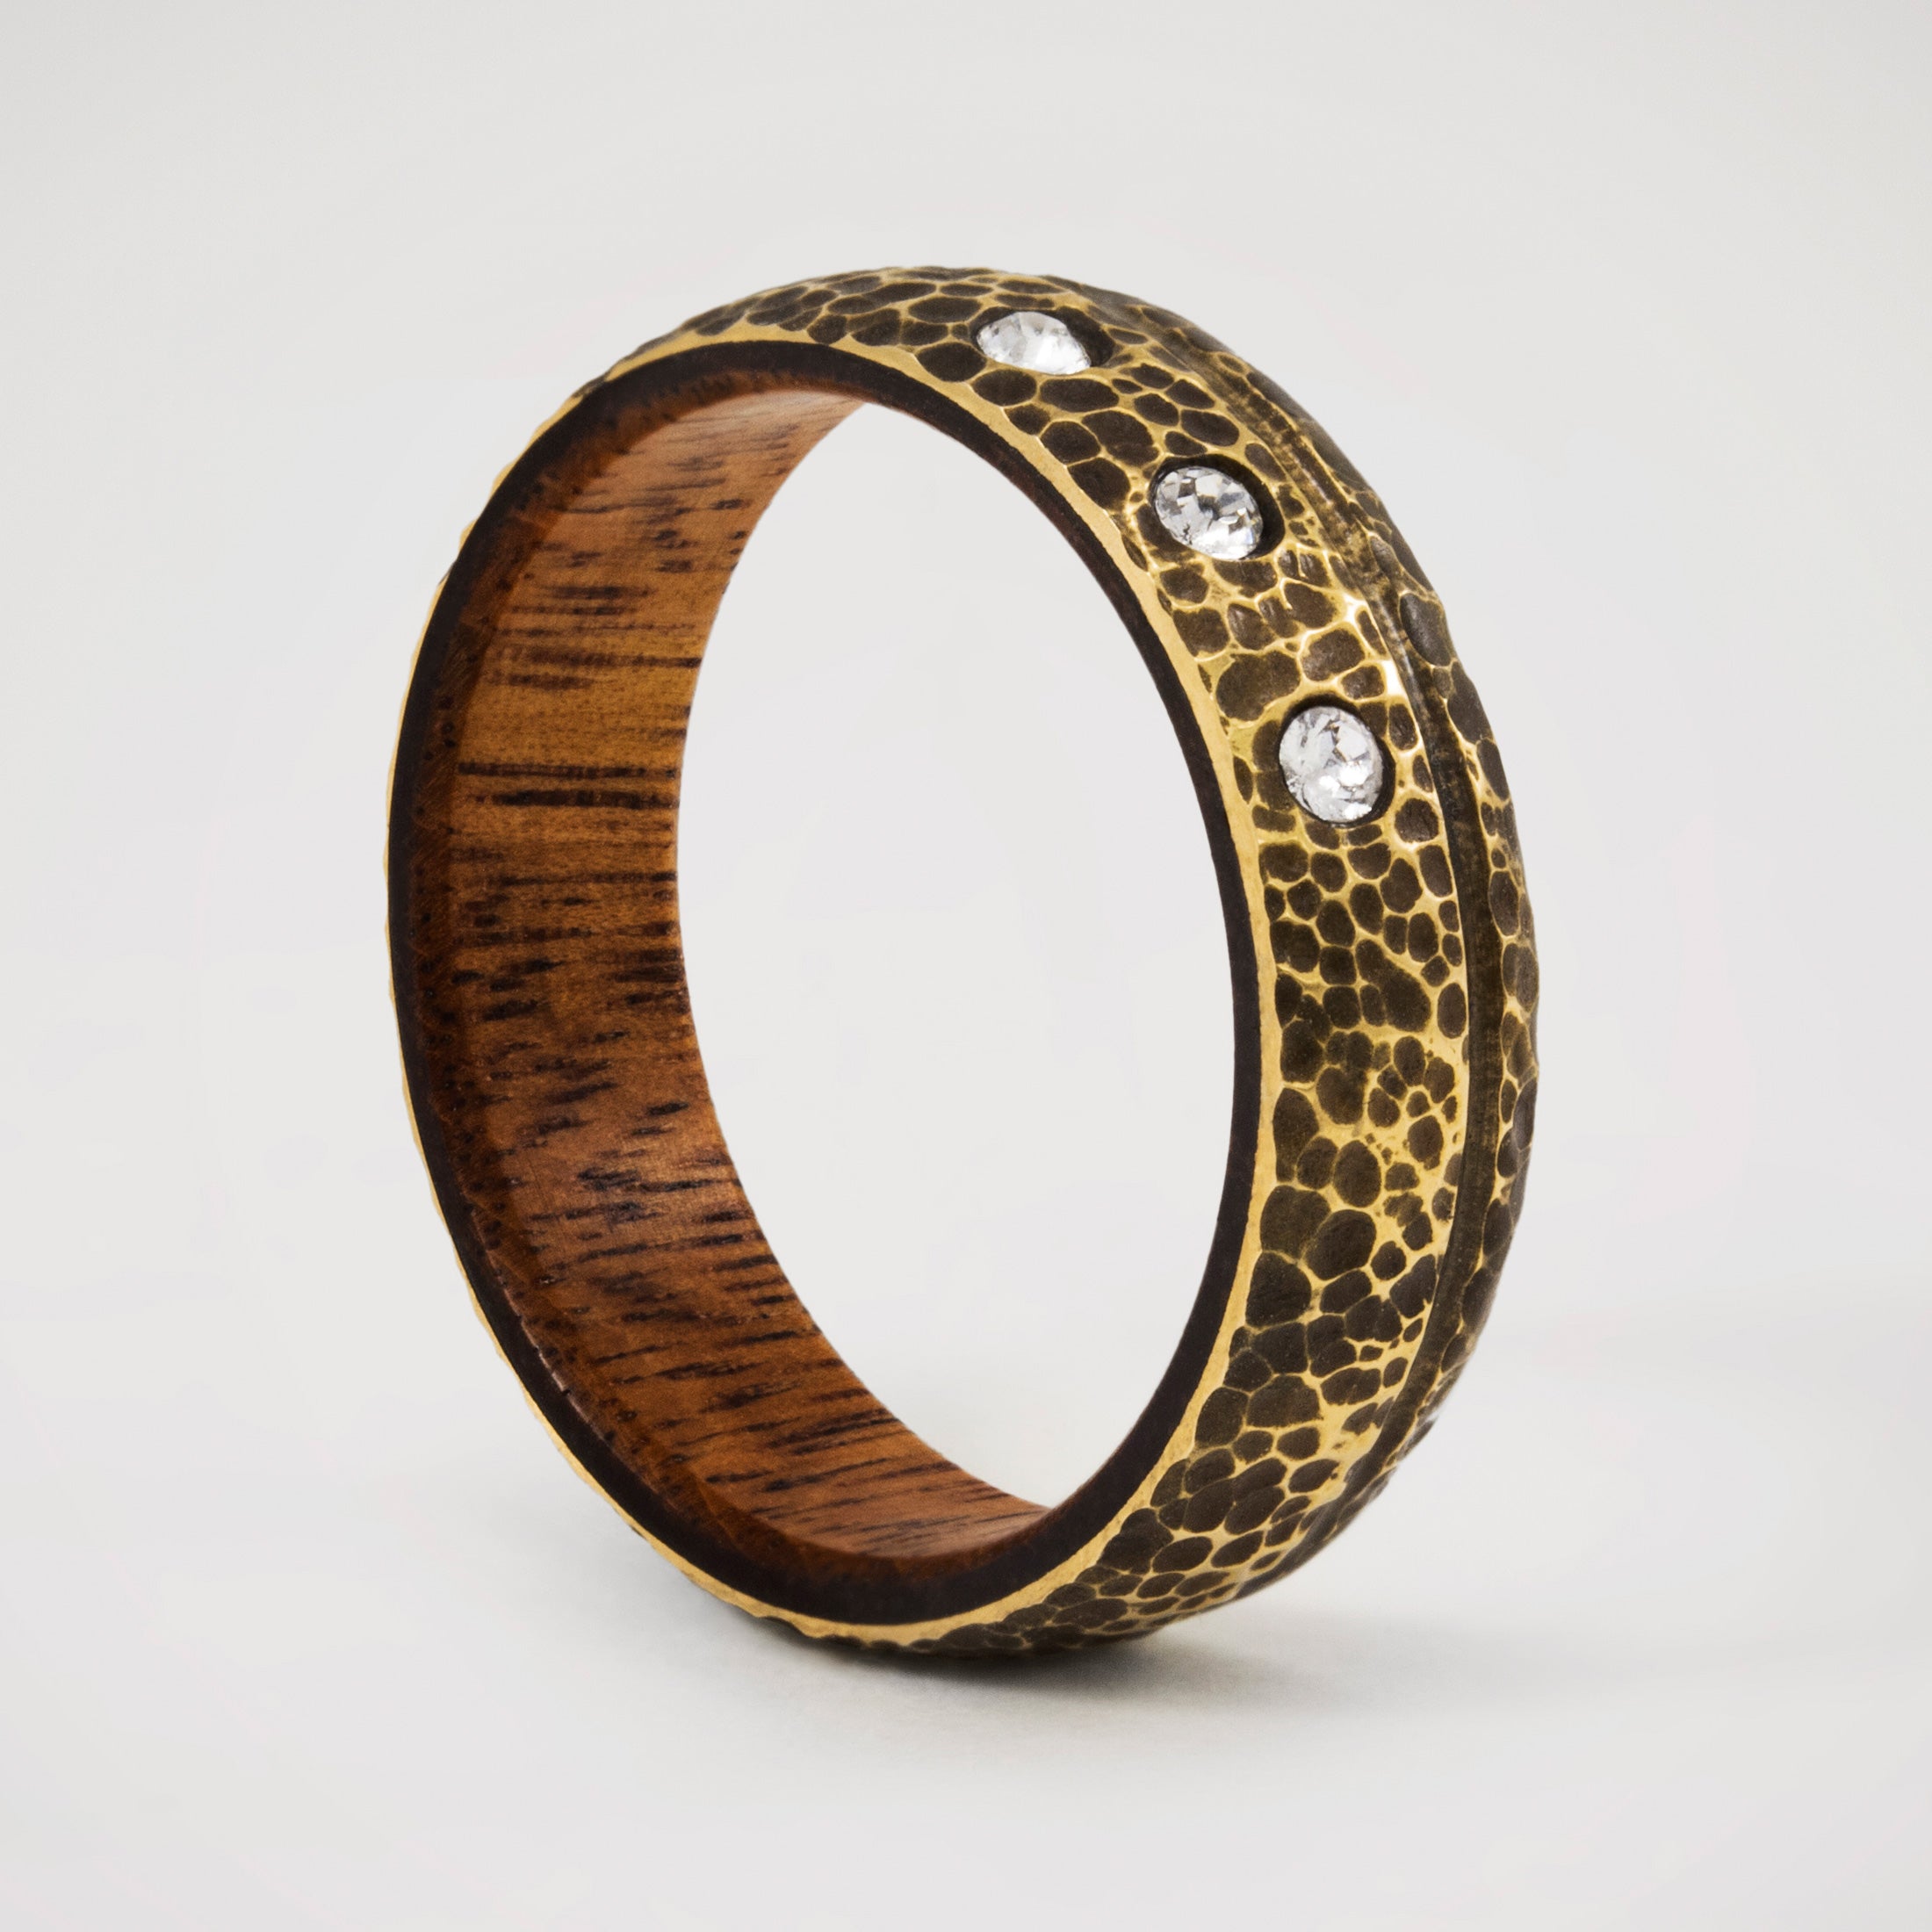 Darkened Bronze & wood Ring